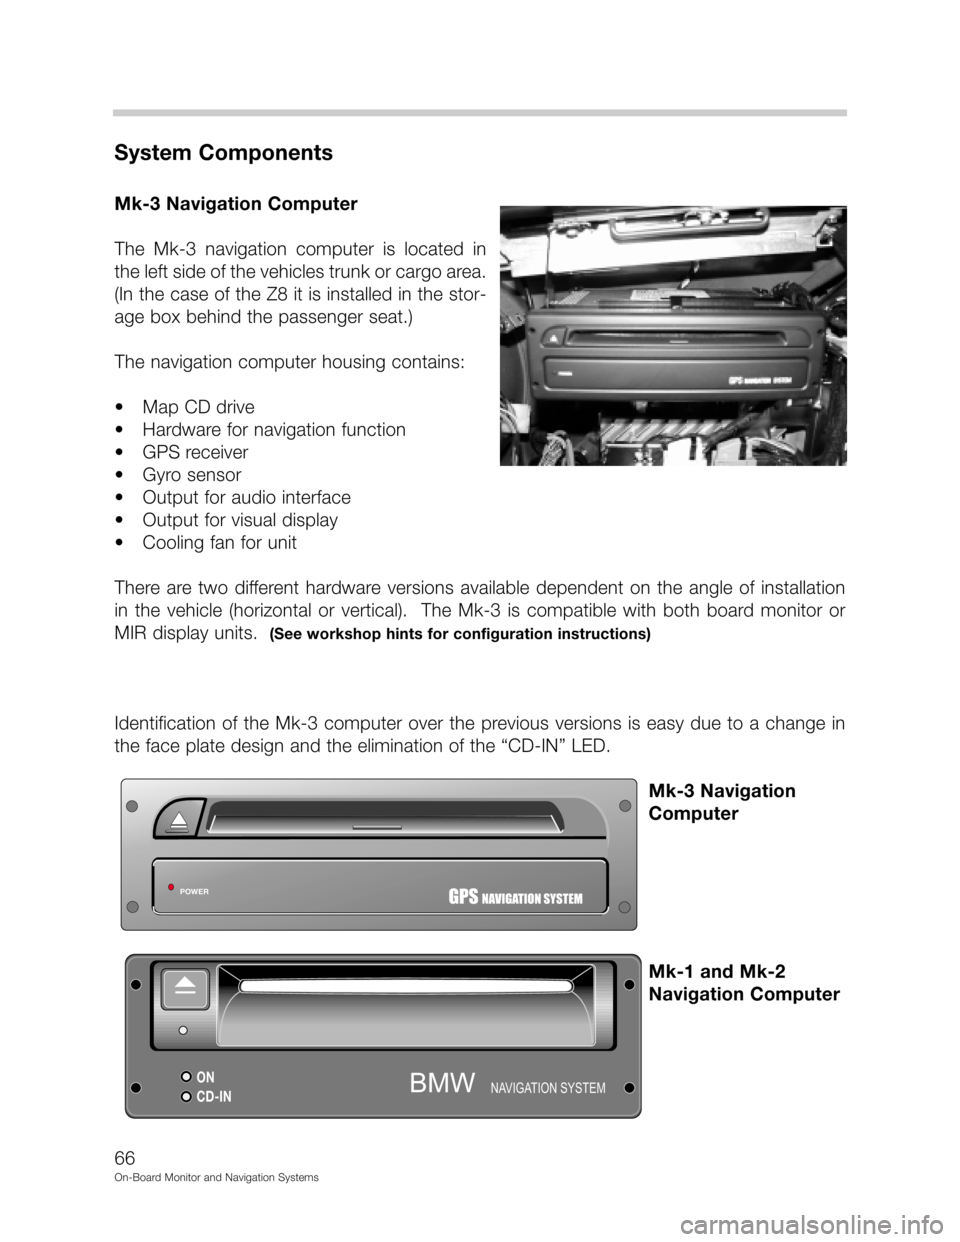 BMW 5 SERIES 1998 E39 On Board Monitor System Workshop Manual DD



"&
(	
-.2./!!
	0", 1" !2./
# 9. 
&
 	
   
&
9
70
